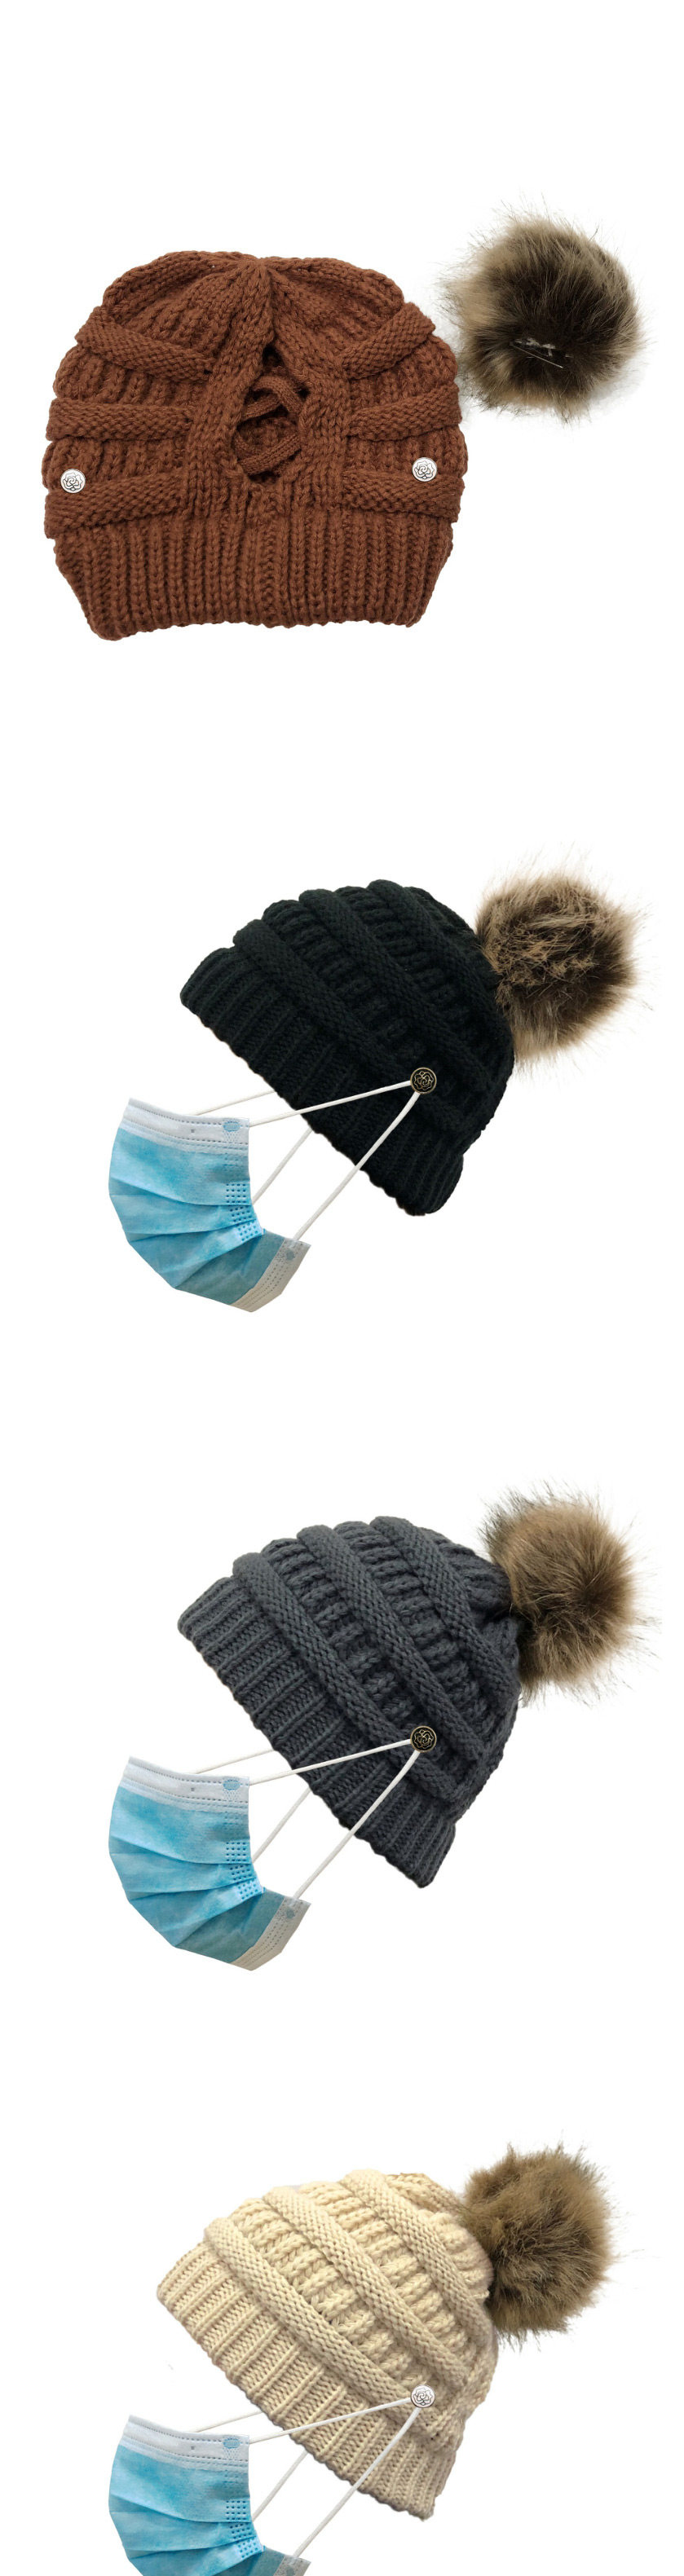 Fashion Black Flowers Button Knitted Cross-belt Woolen Hat,Knitting Wool Hats